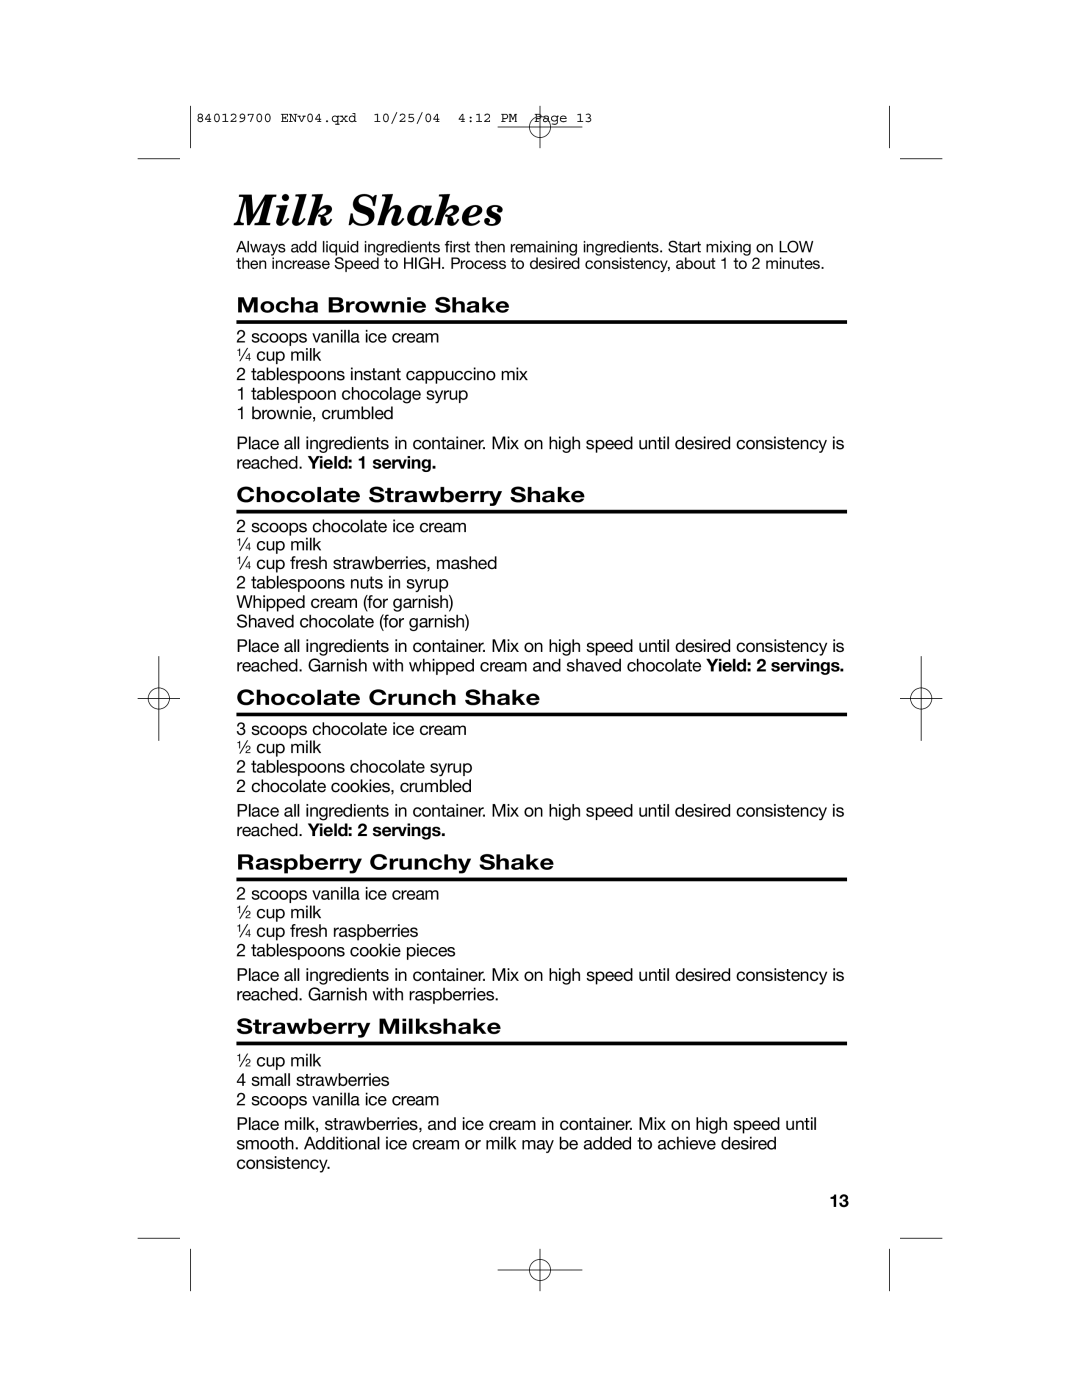 Hamilton Beach Drink Mixer Mocha Brownie Shake, Chocolate Strawberry Shake, Chocolate Crunch Shake, Strawberry Milkshake 